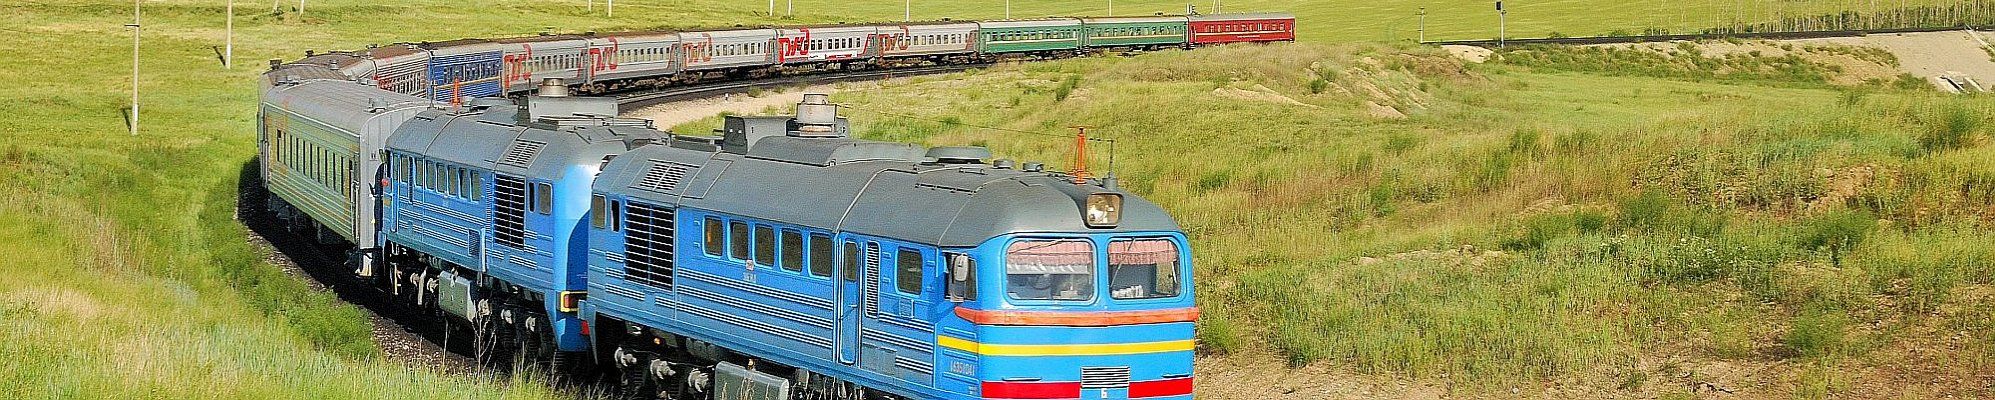 Erlebnis Transsibirische Eisenbahn © Georgiy Konyushkin